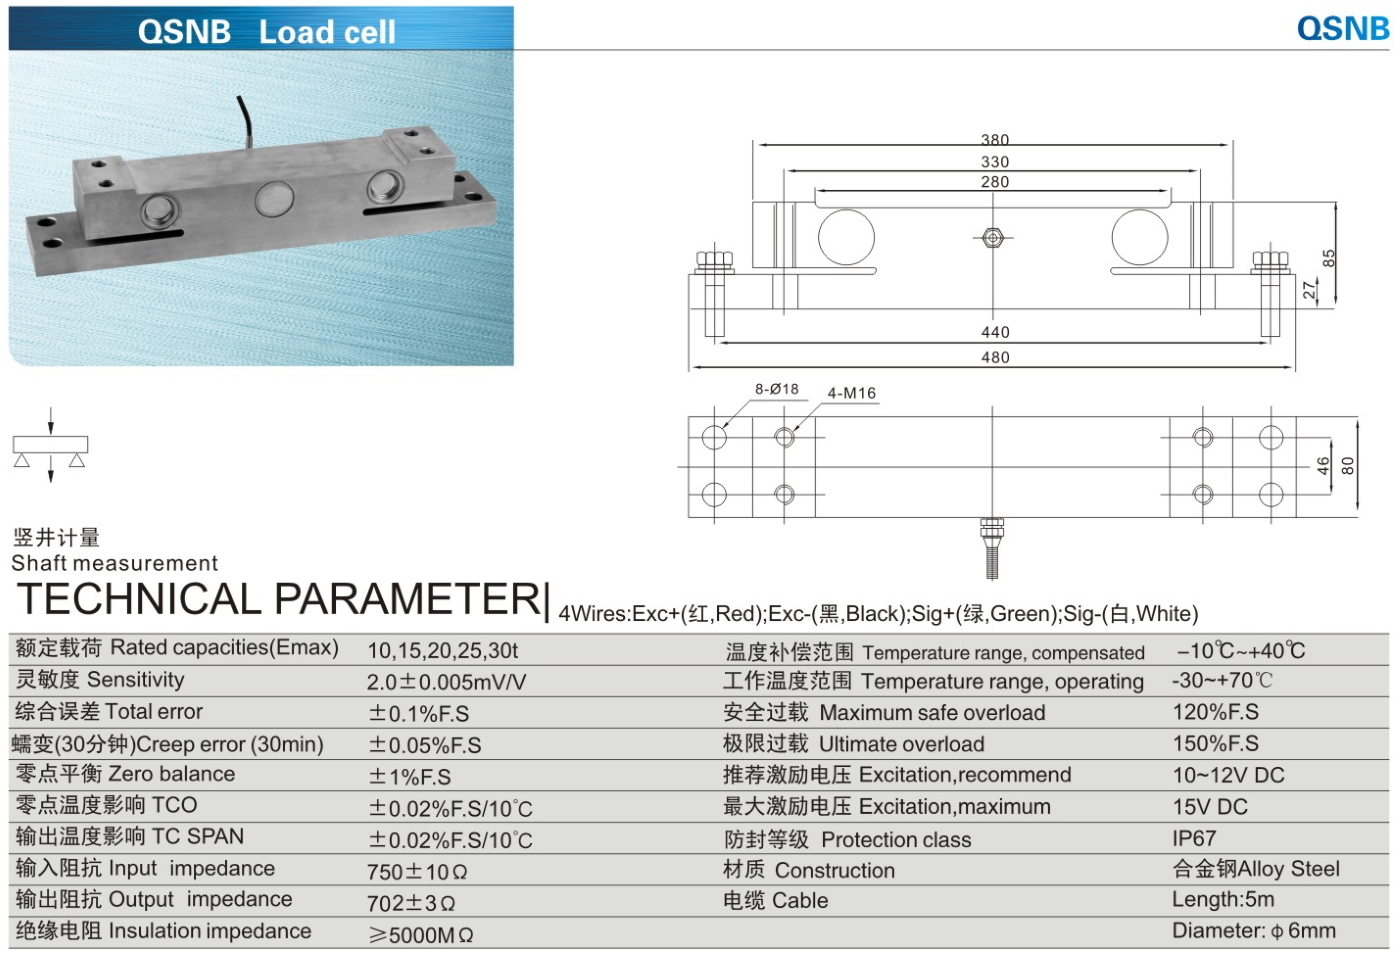 img/loadcell-images/double-ended-shear-beam/KELI_QSNB_Loadcell-TTM_Teknoloji.jpg